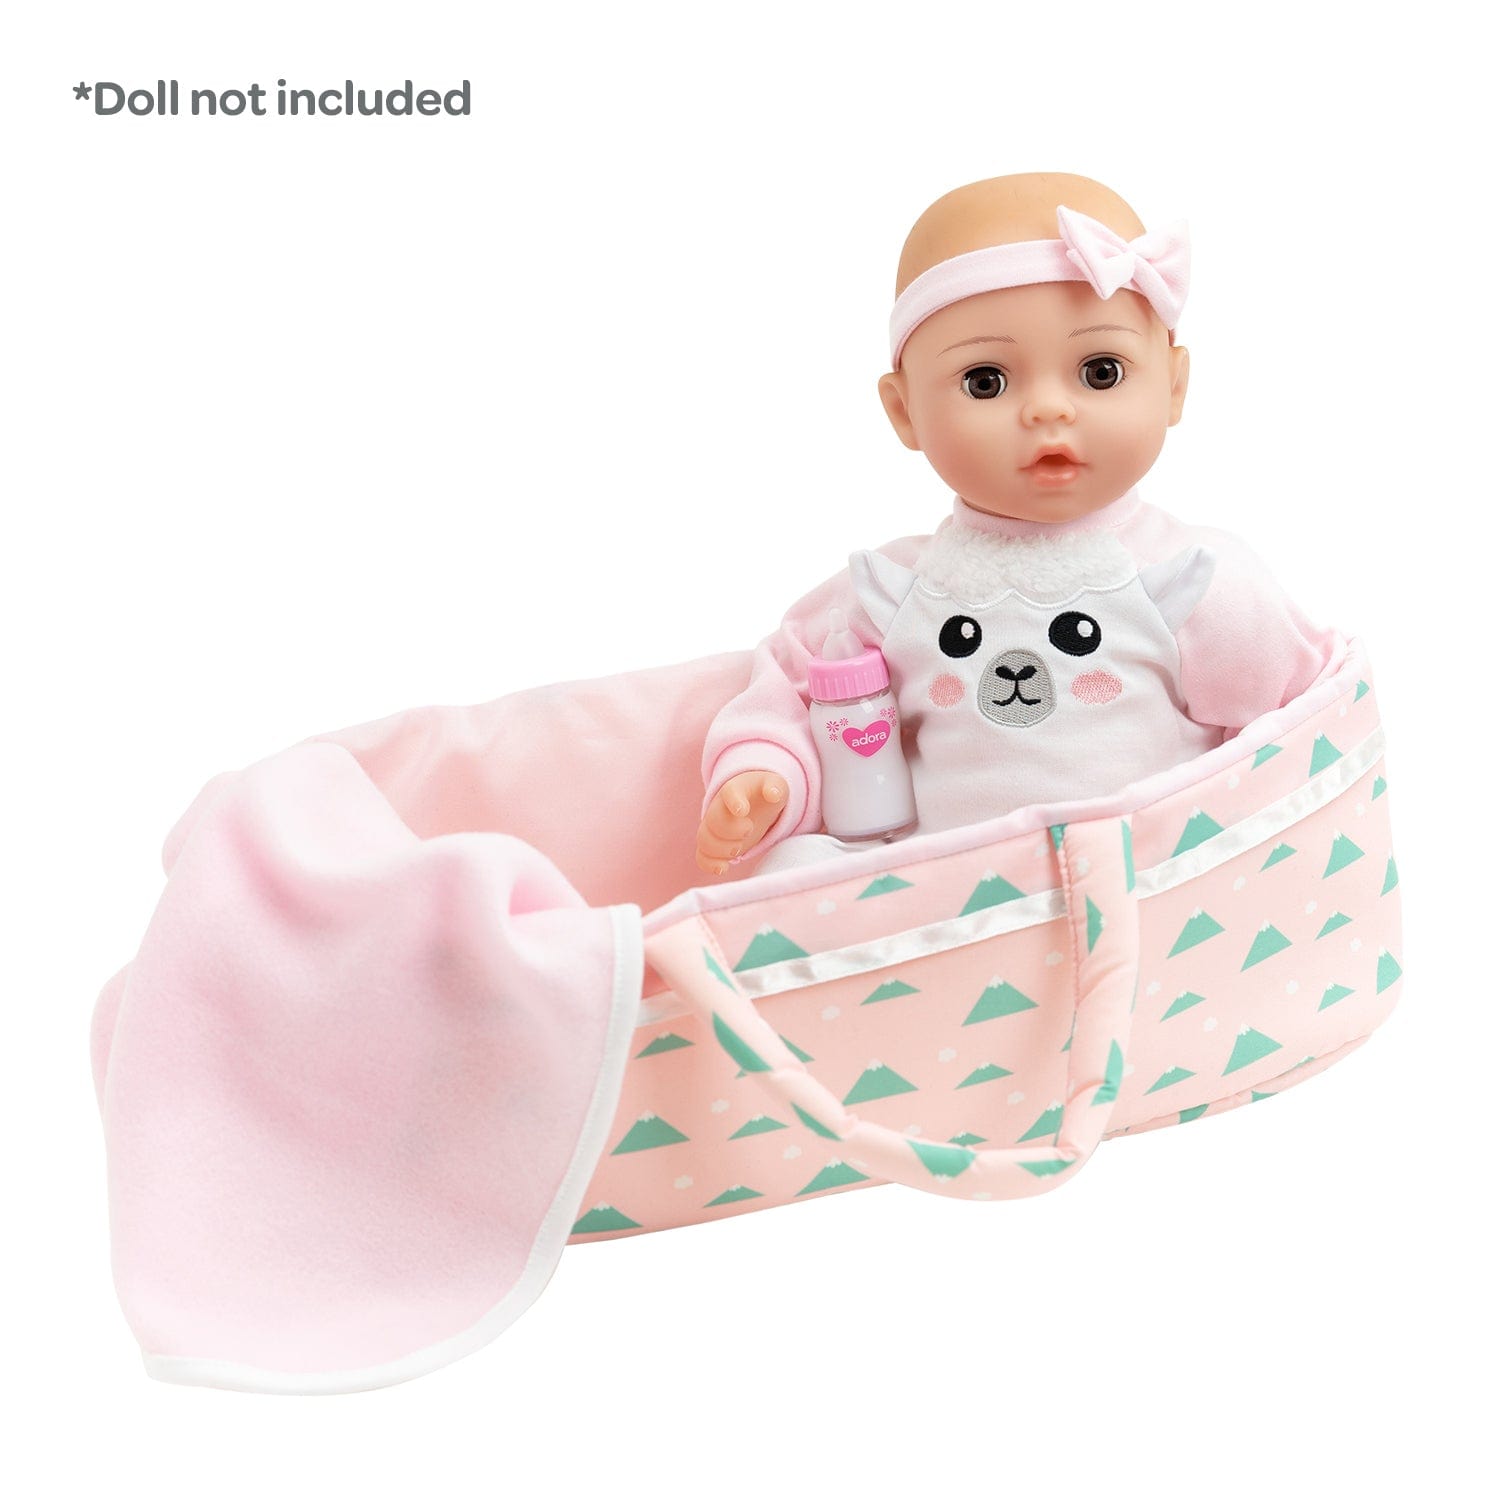 Adoption Nurturing Essentials for 16 inch Babies - 7 Piece Gift Set in Llama print